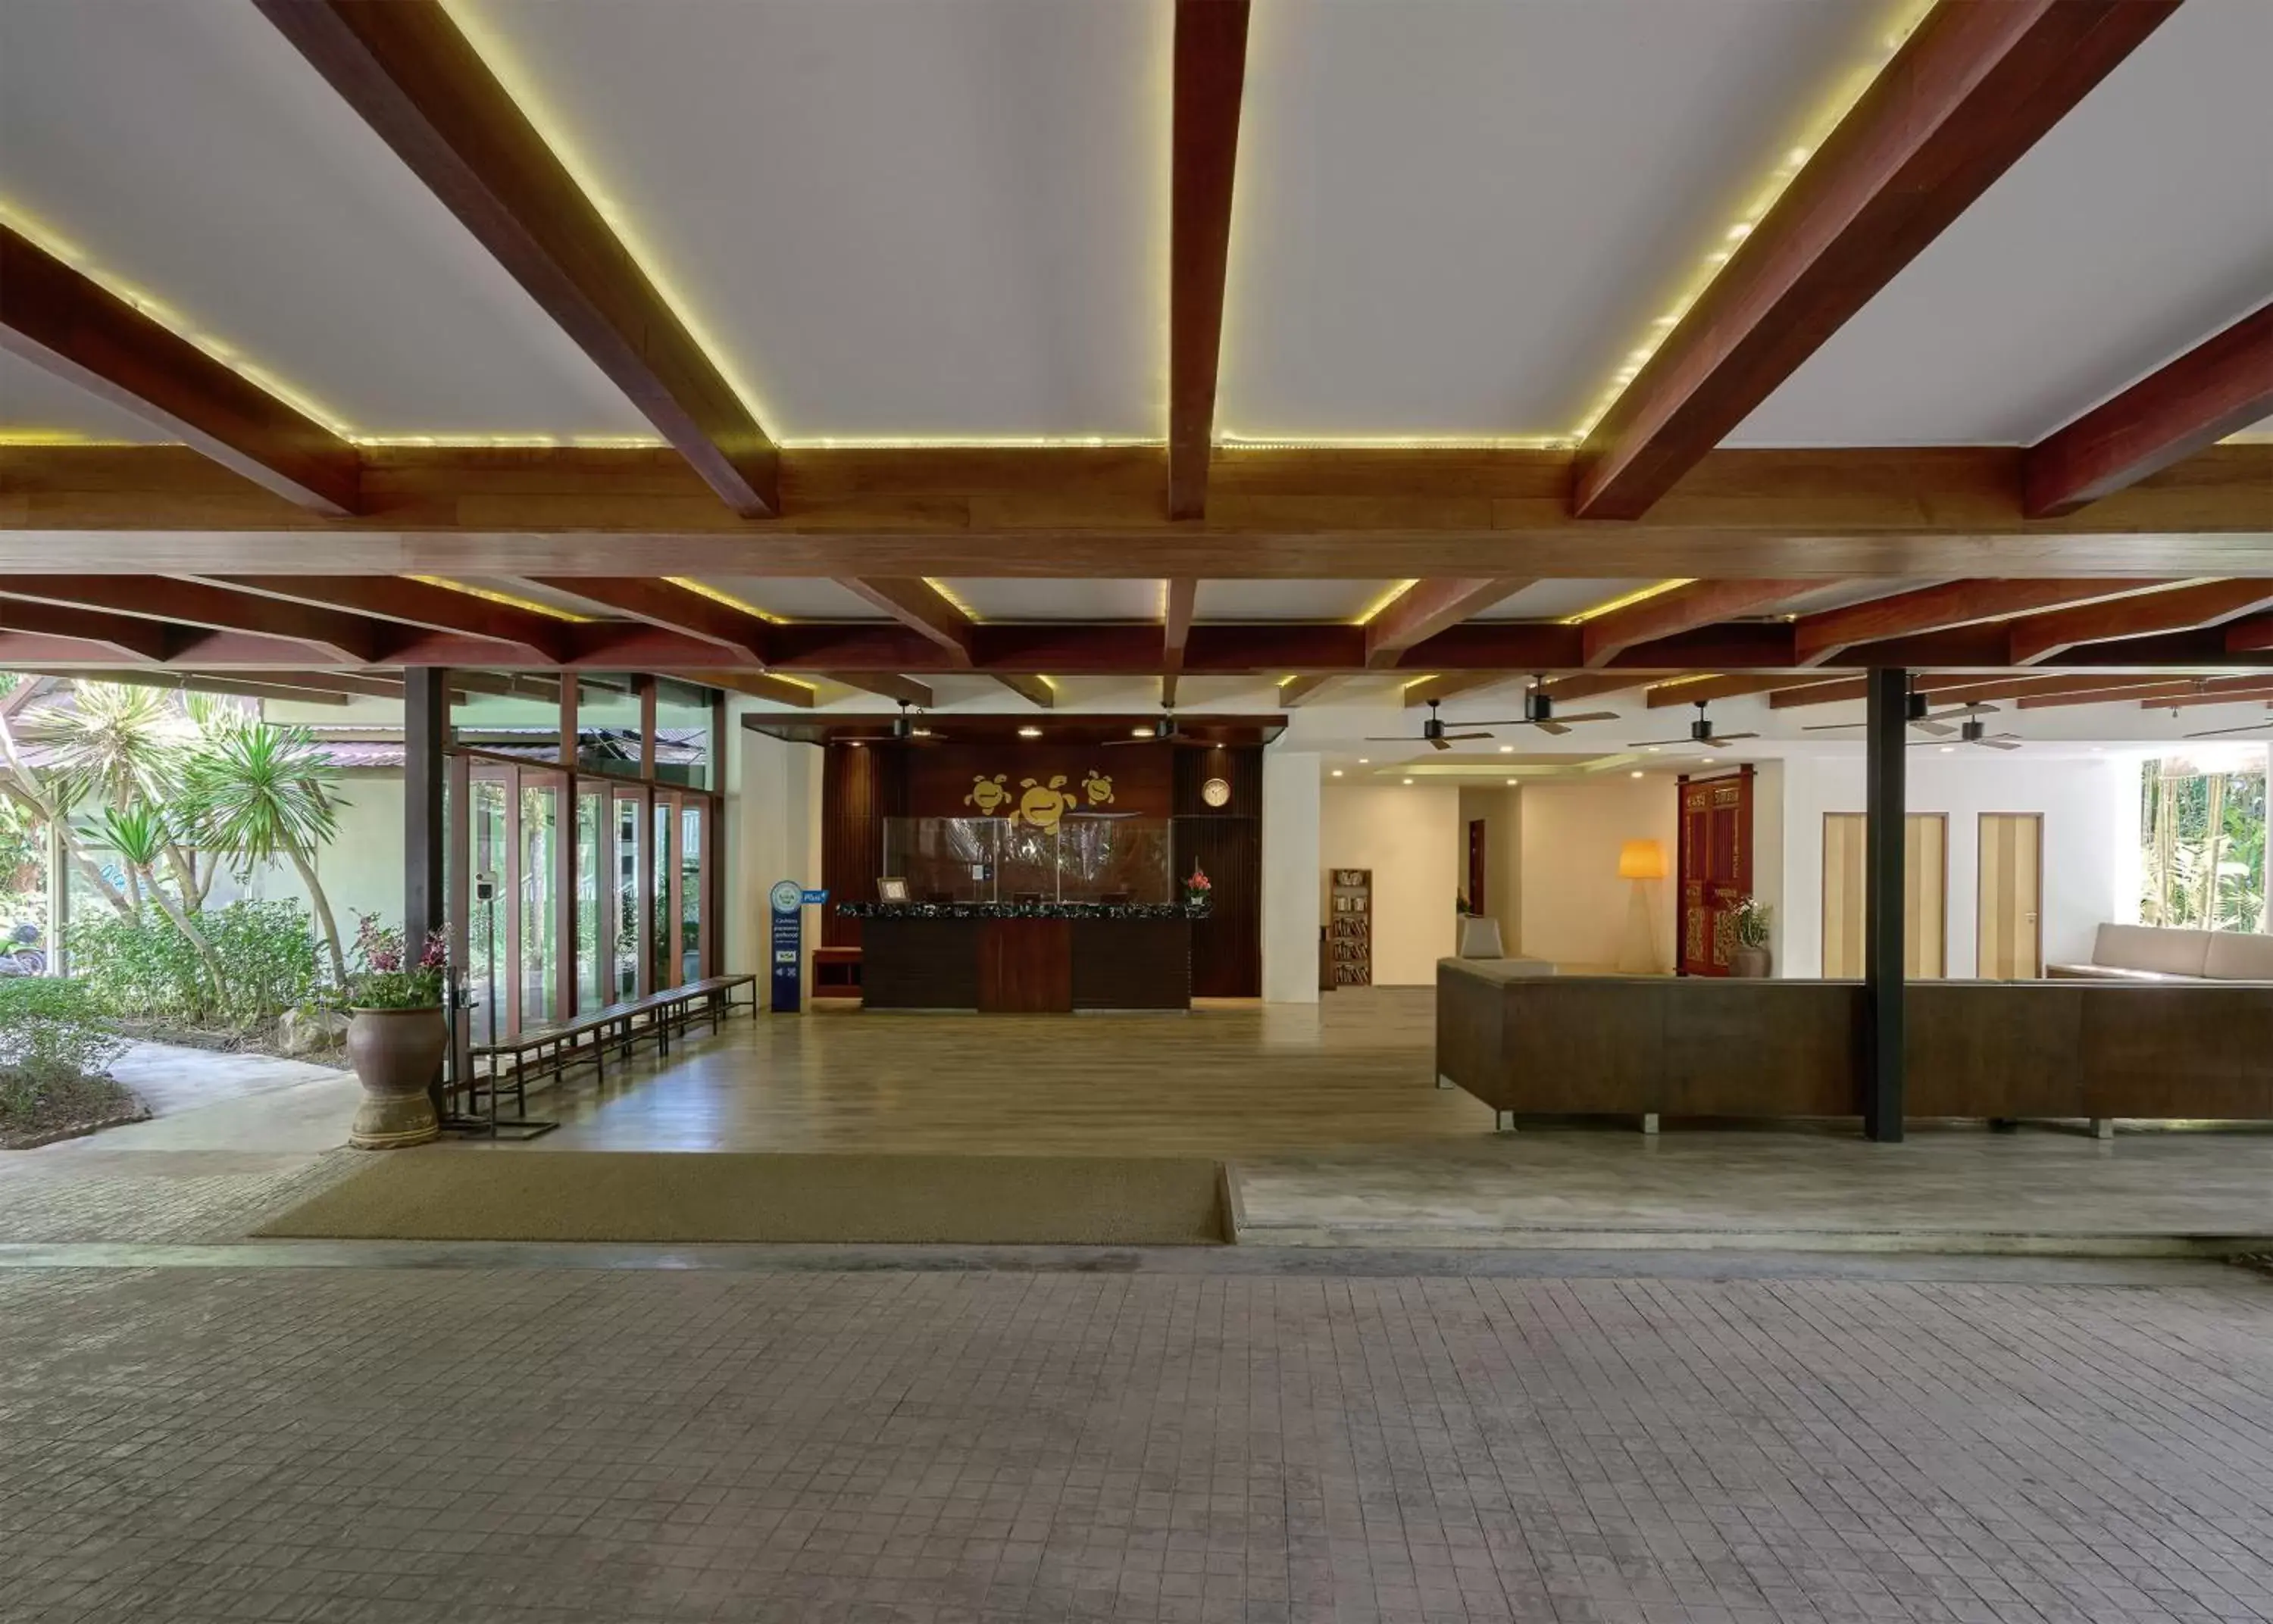 Lobby or reception in Nai Yang Beach Resort and Spa